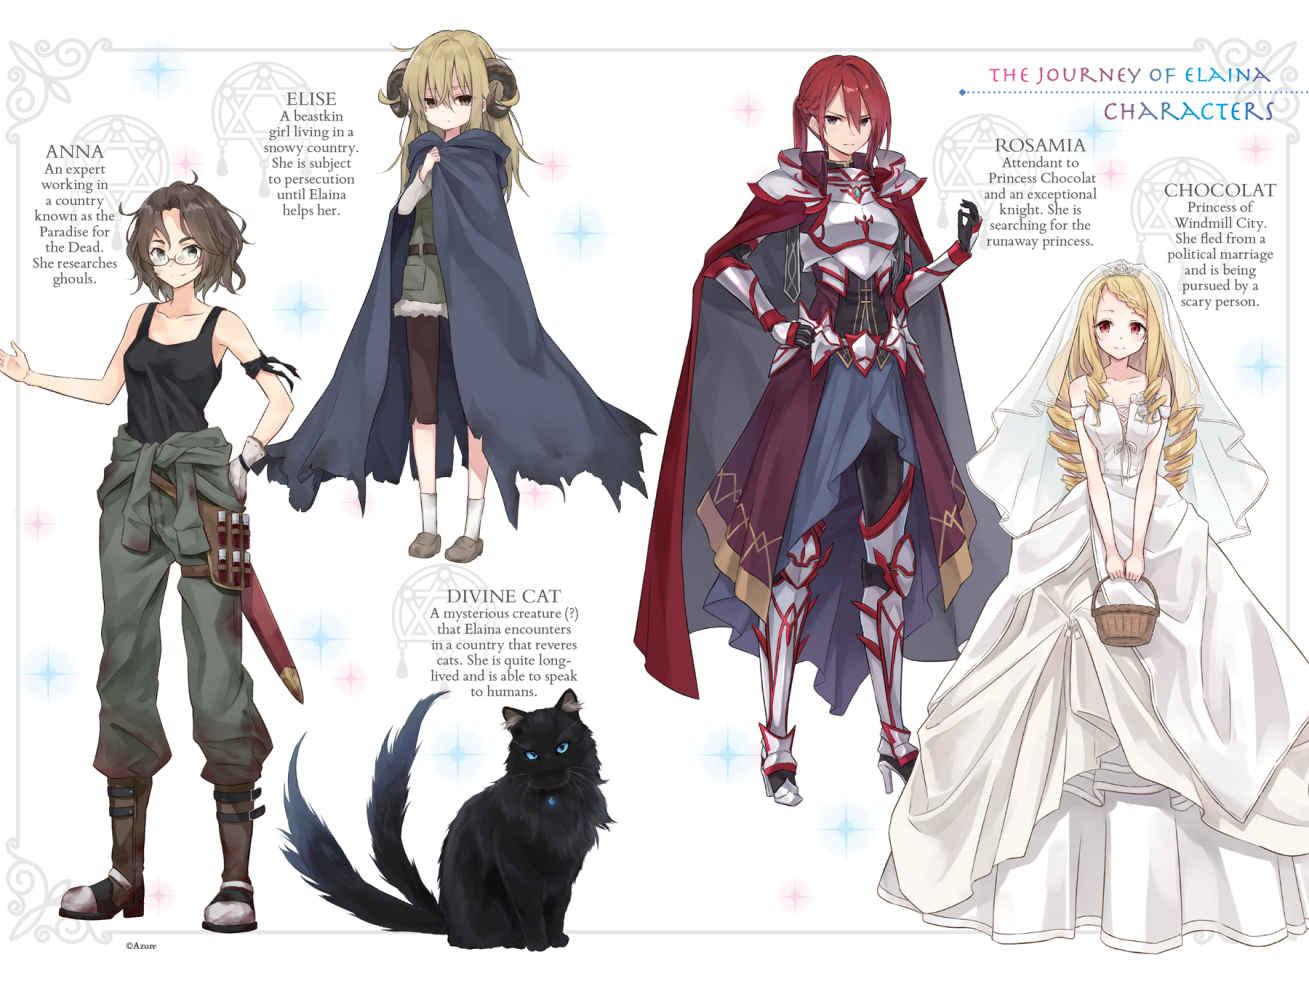 Algunos de los personajes principales de "Majo no Tabitabi": Anna, Elise, Rosamia y Chocolat. La ilustración, obra de Azure, pertenece al Vol. 2 de "Wandering Witch: The Journey of Elaina".